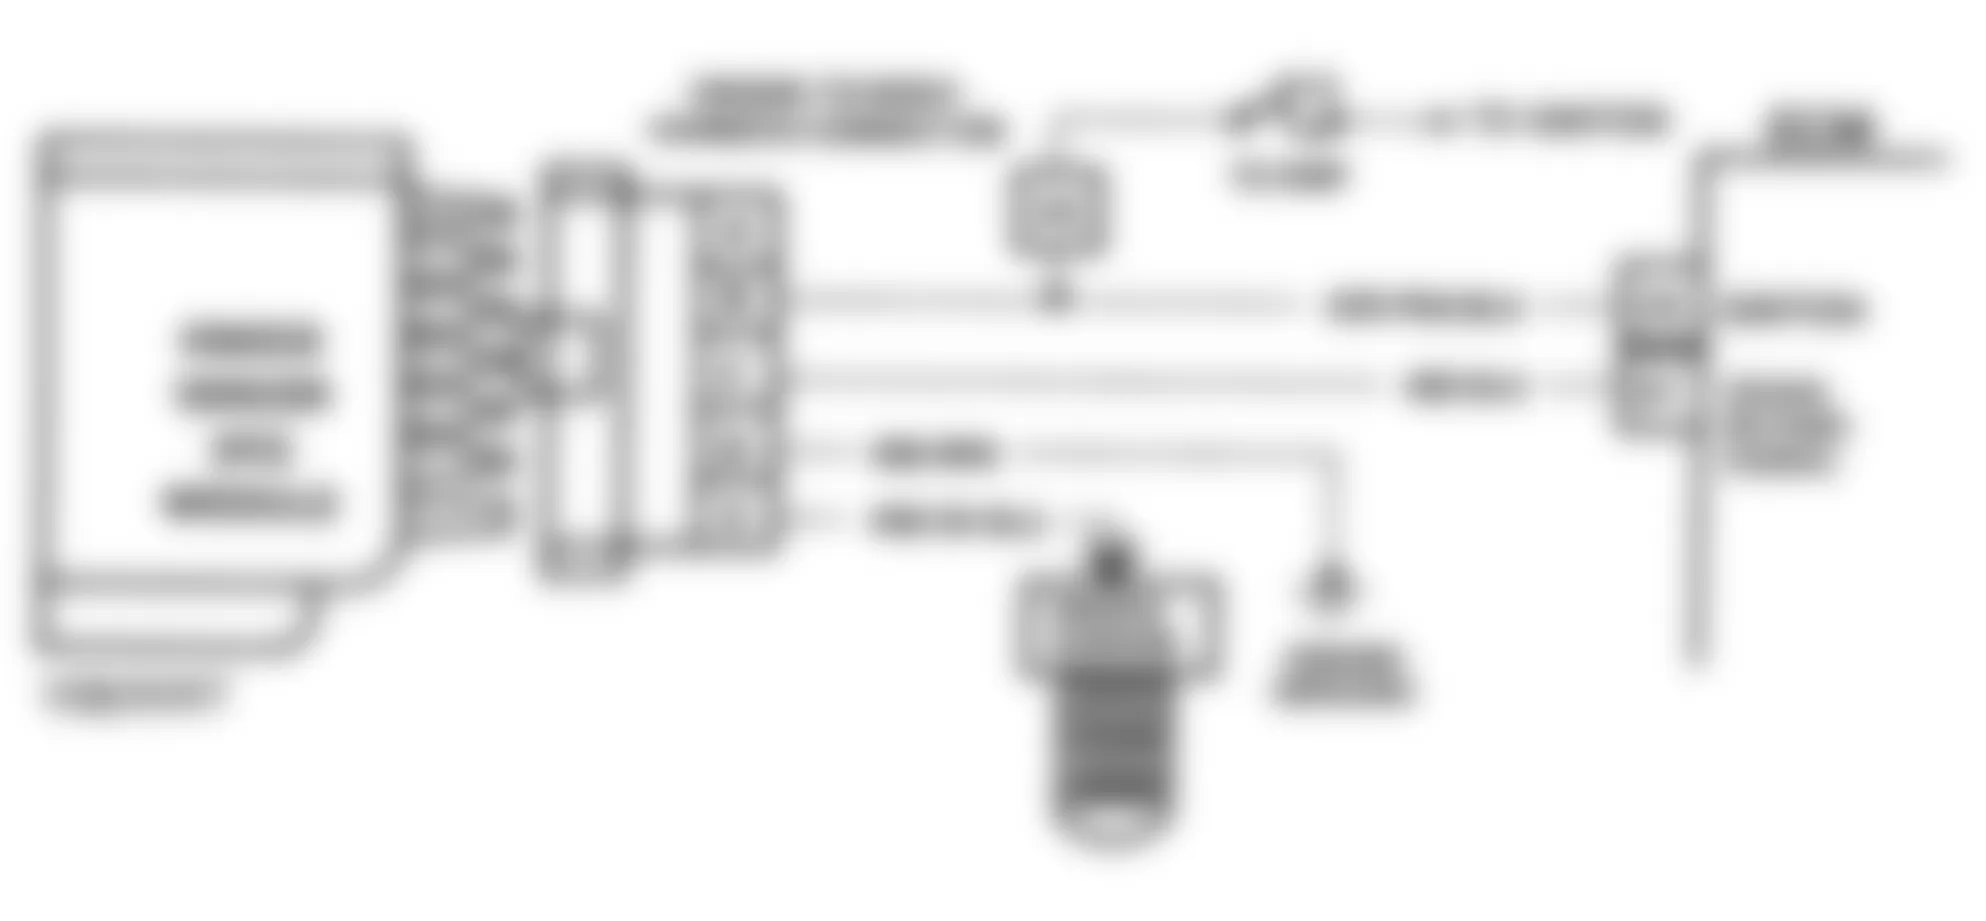 Buick Roadmaster Estate Wagon 1993 - Component Locations -  Code 43 Schematic (With ESC Module) ESC Error